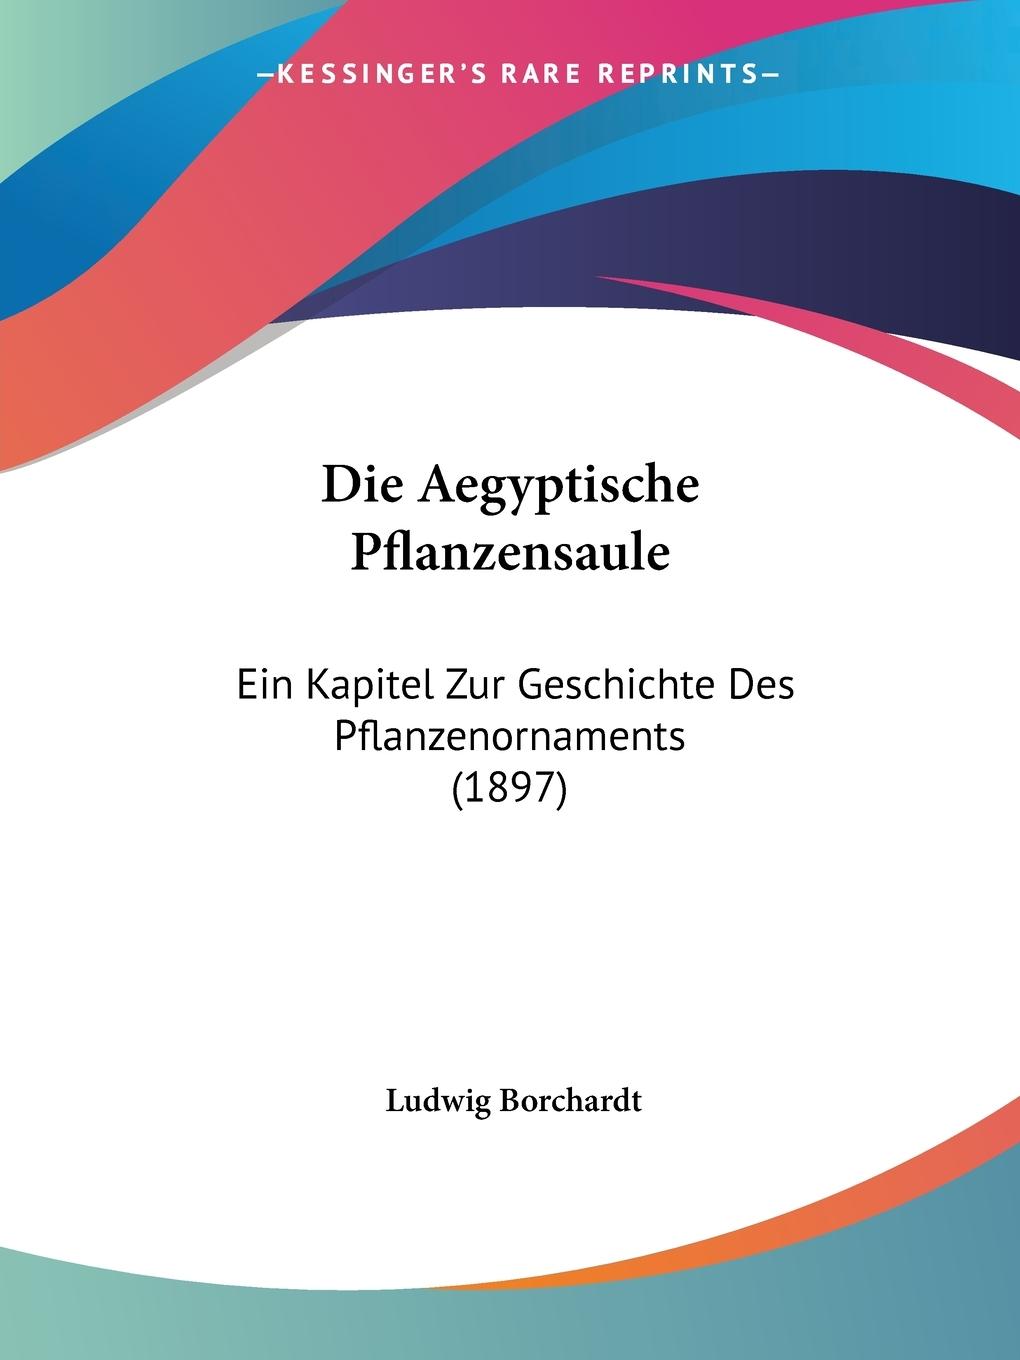 Die Aegyptische Pflanzensaule - Borchardt, Ludwig